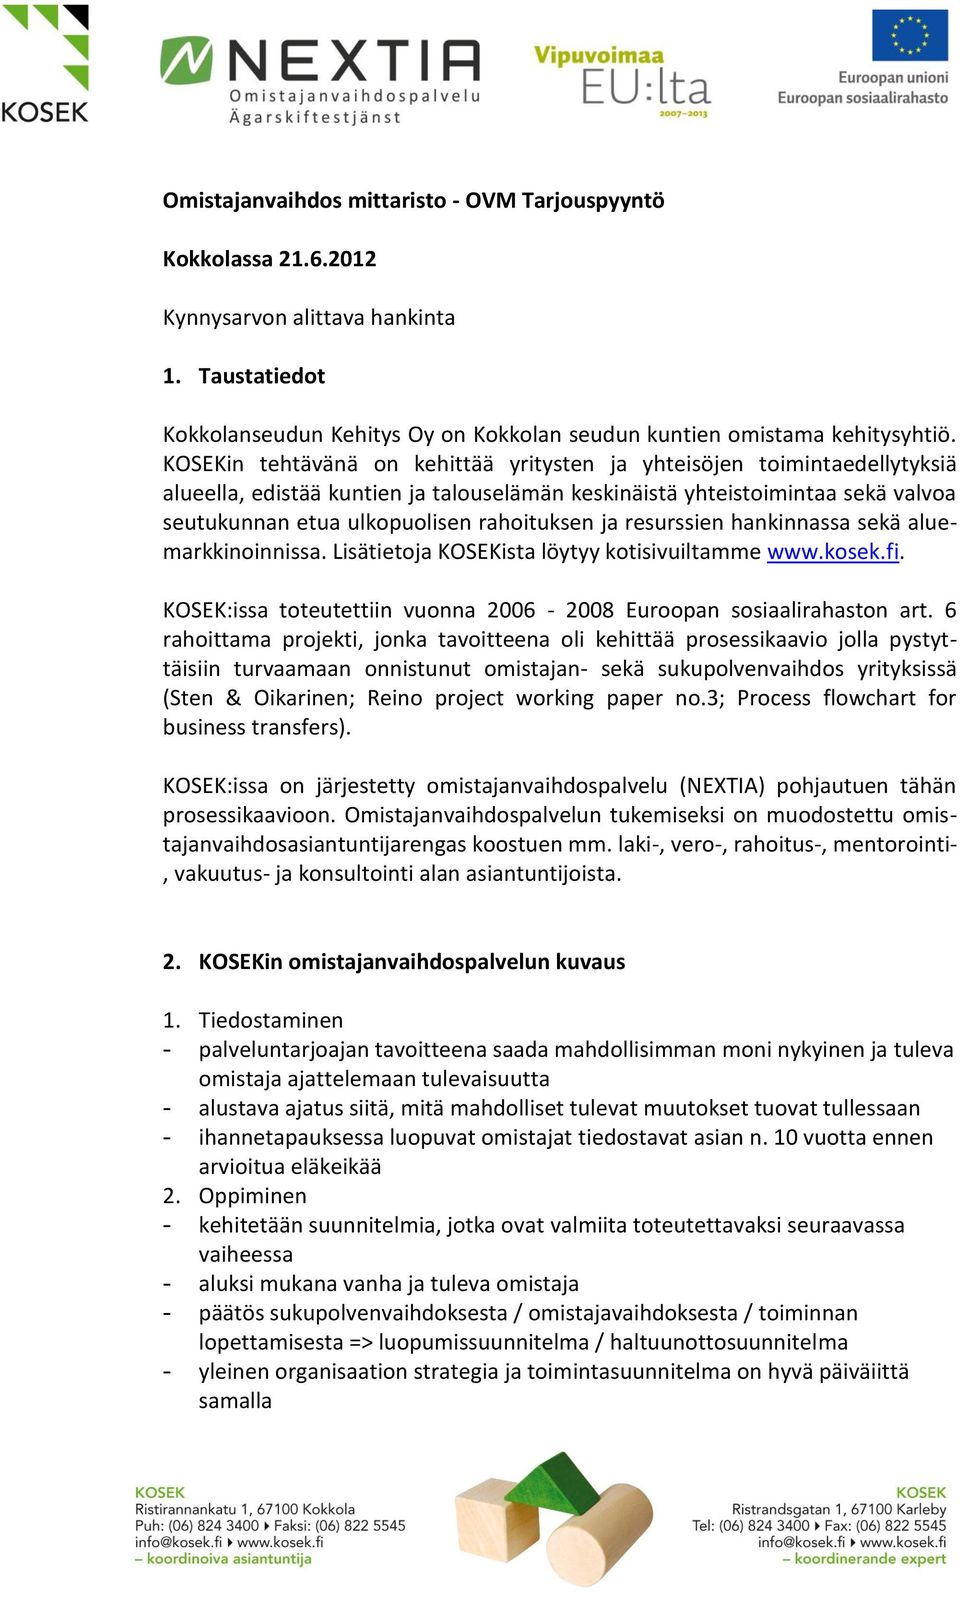 ja resurssien hankinnassa sekä aluemarkkinoinnissa. Lisätietoja KOSEKista löytyy kotisivuiltamme www.kosek.fi. KOSEK:issa toteutettiin vuonna 2006-2008 Euroopan sosiaalirahaston art.